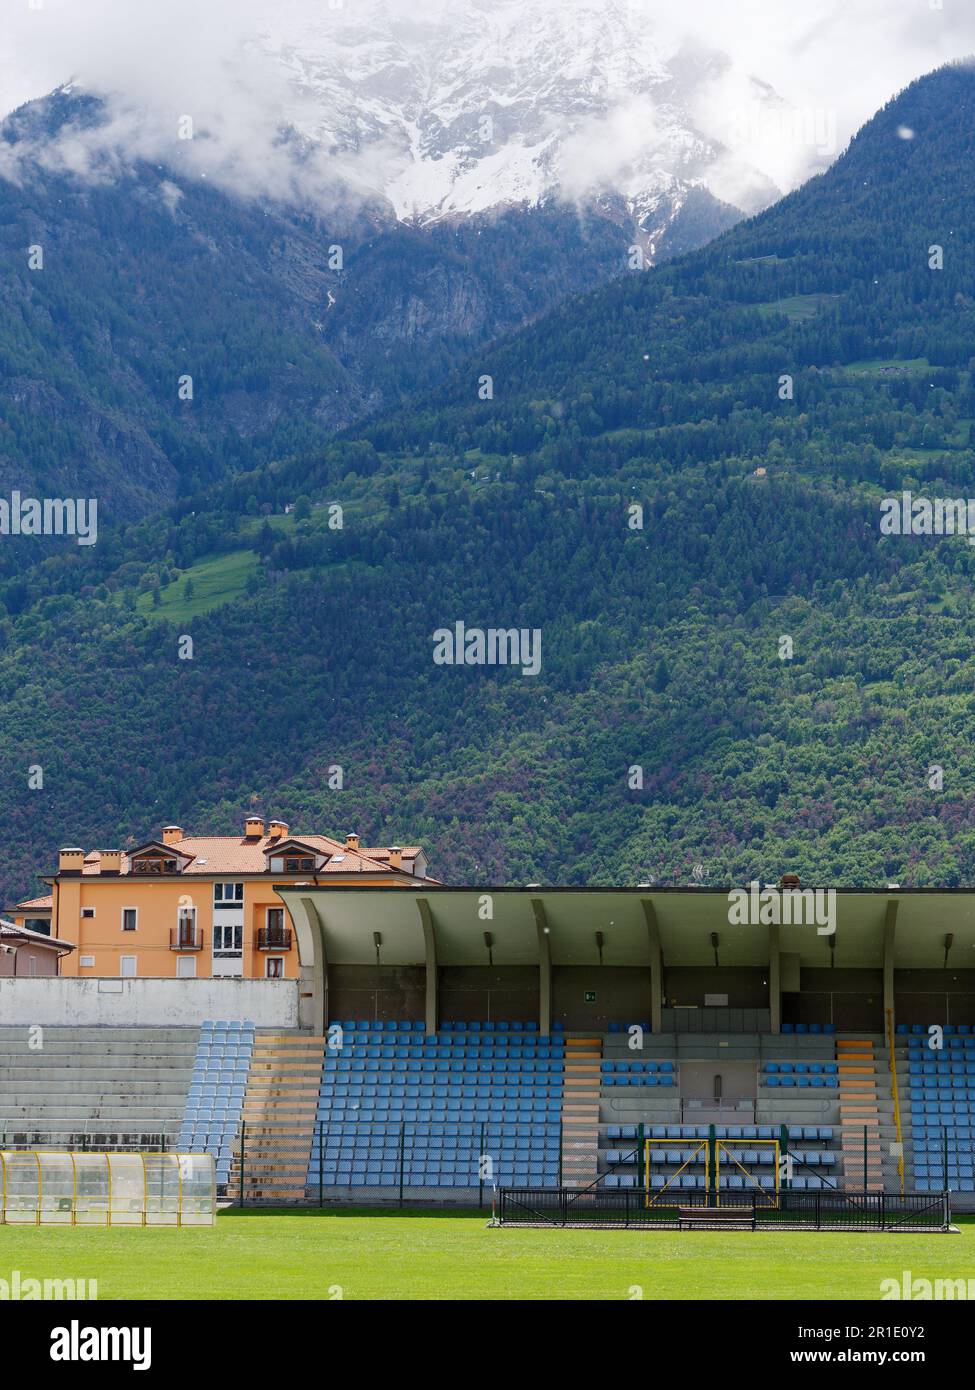 Stadio di calcio Mario Puchoz nella città di Aosta, Valle d'Aosta, NW  Italia. Nuvole spettacolari sulle alpi innevate alle spalle Foto stock -  Alamy